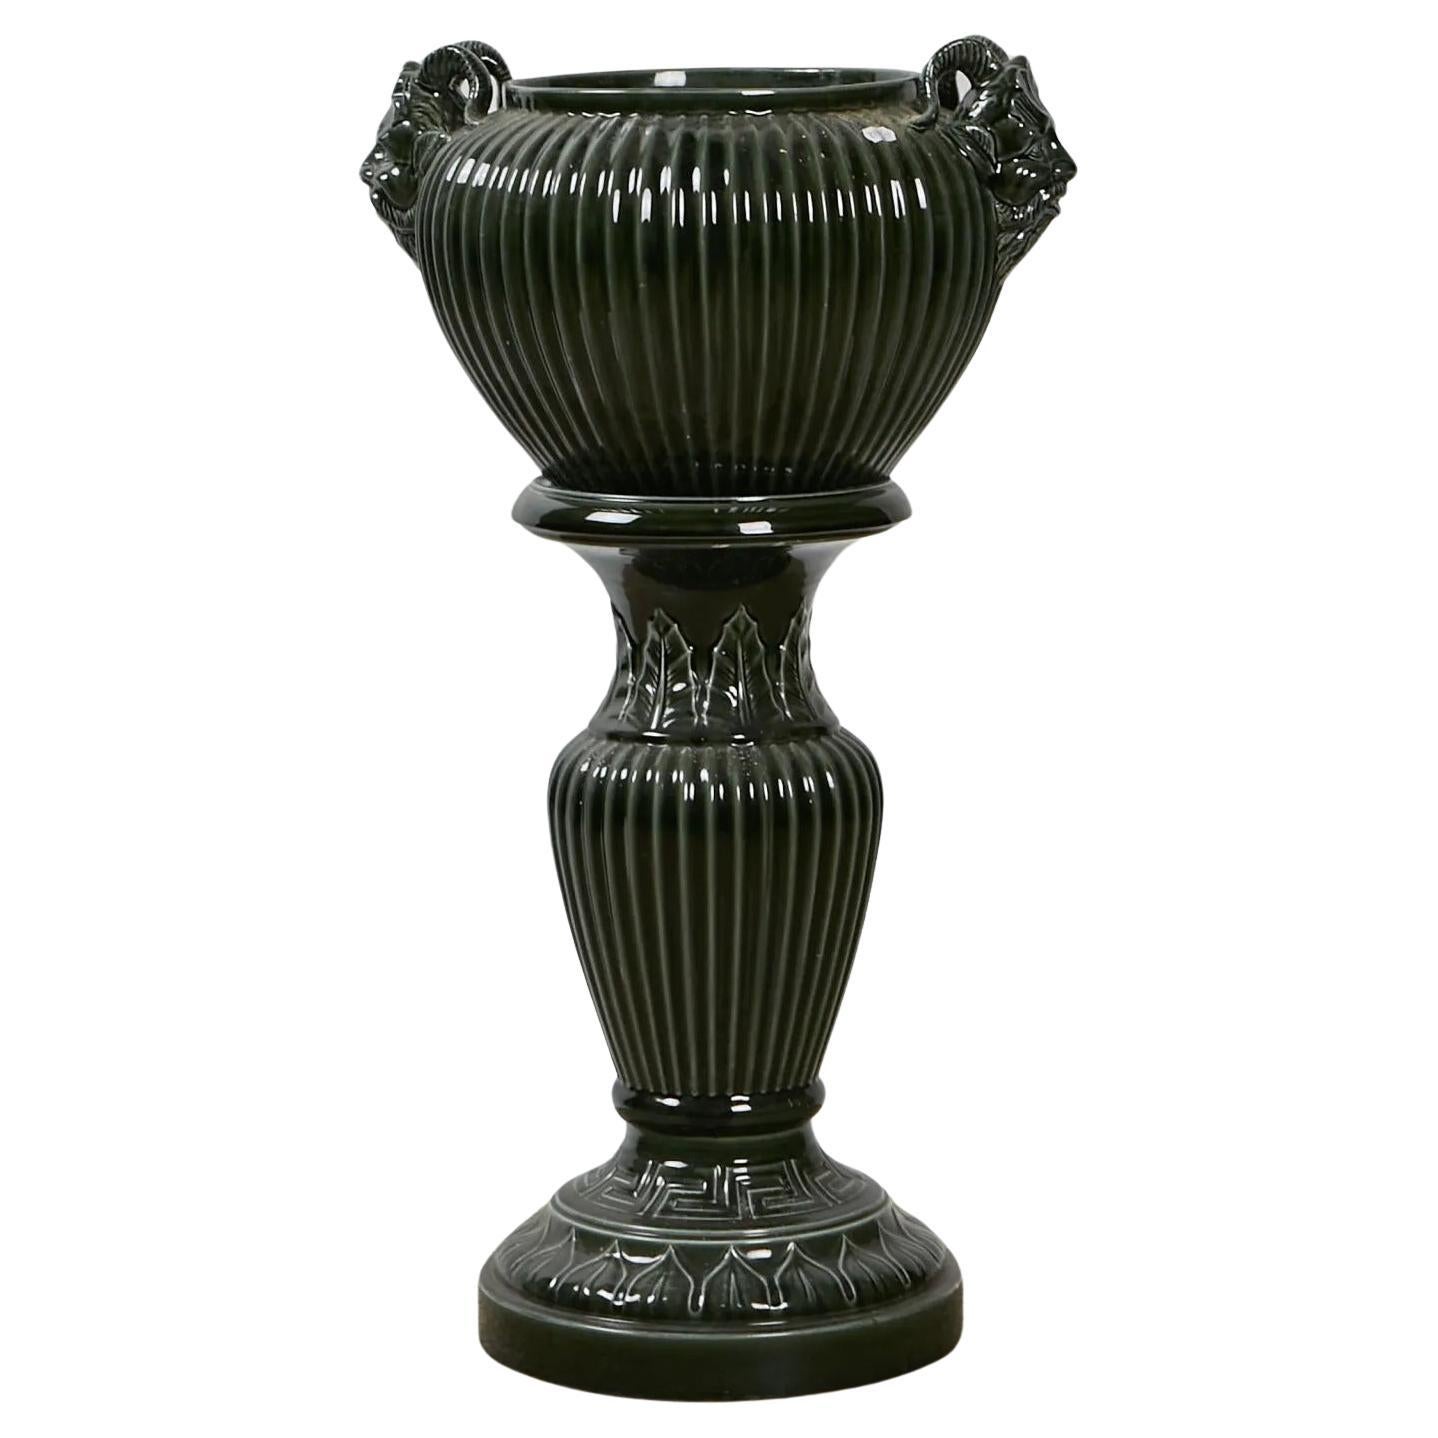 pedestal and its ceramic planter circa 1900